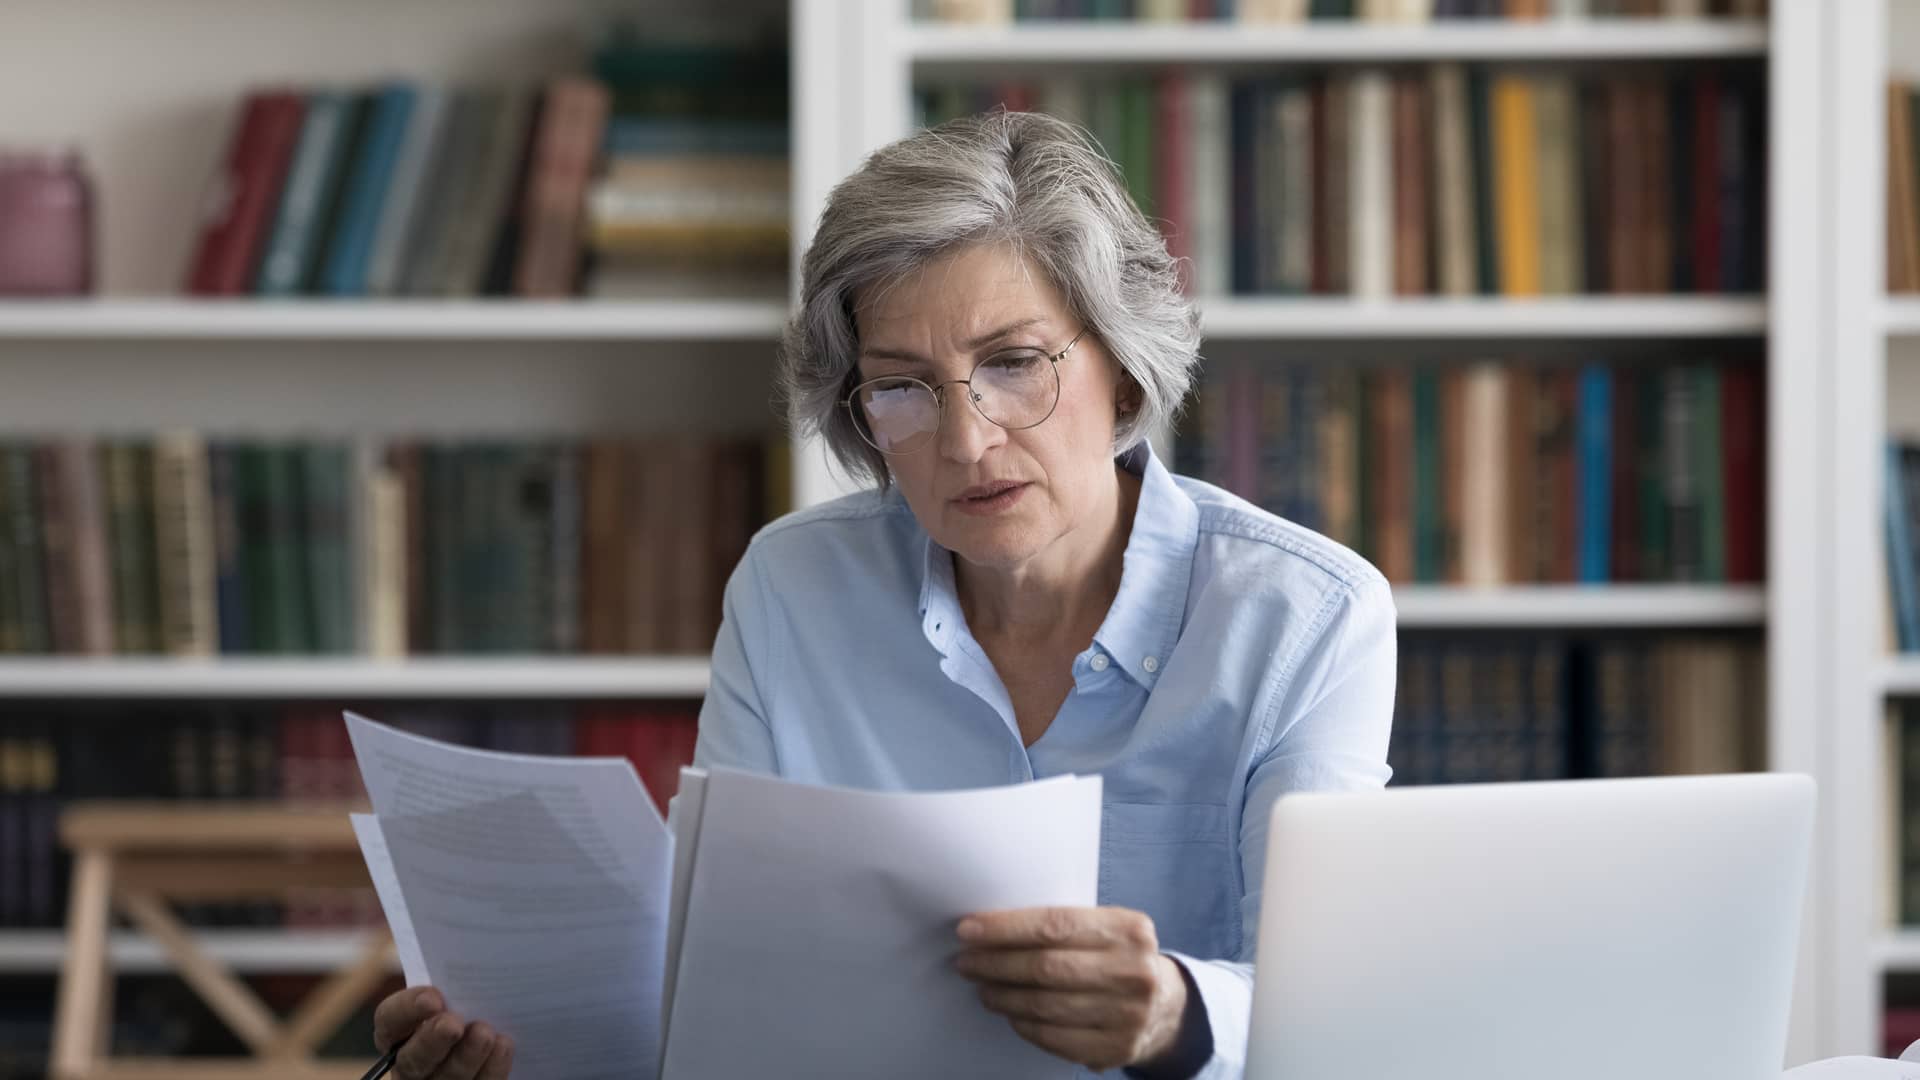 mujer de avanzada edad mirando los papeles de las autorizaciones a unas pruebas medicas con su seguro de asisa